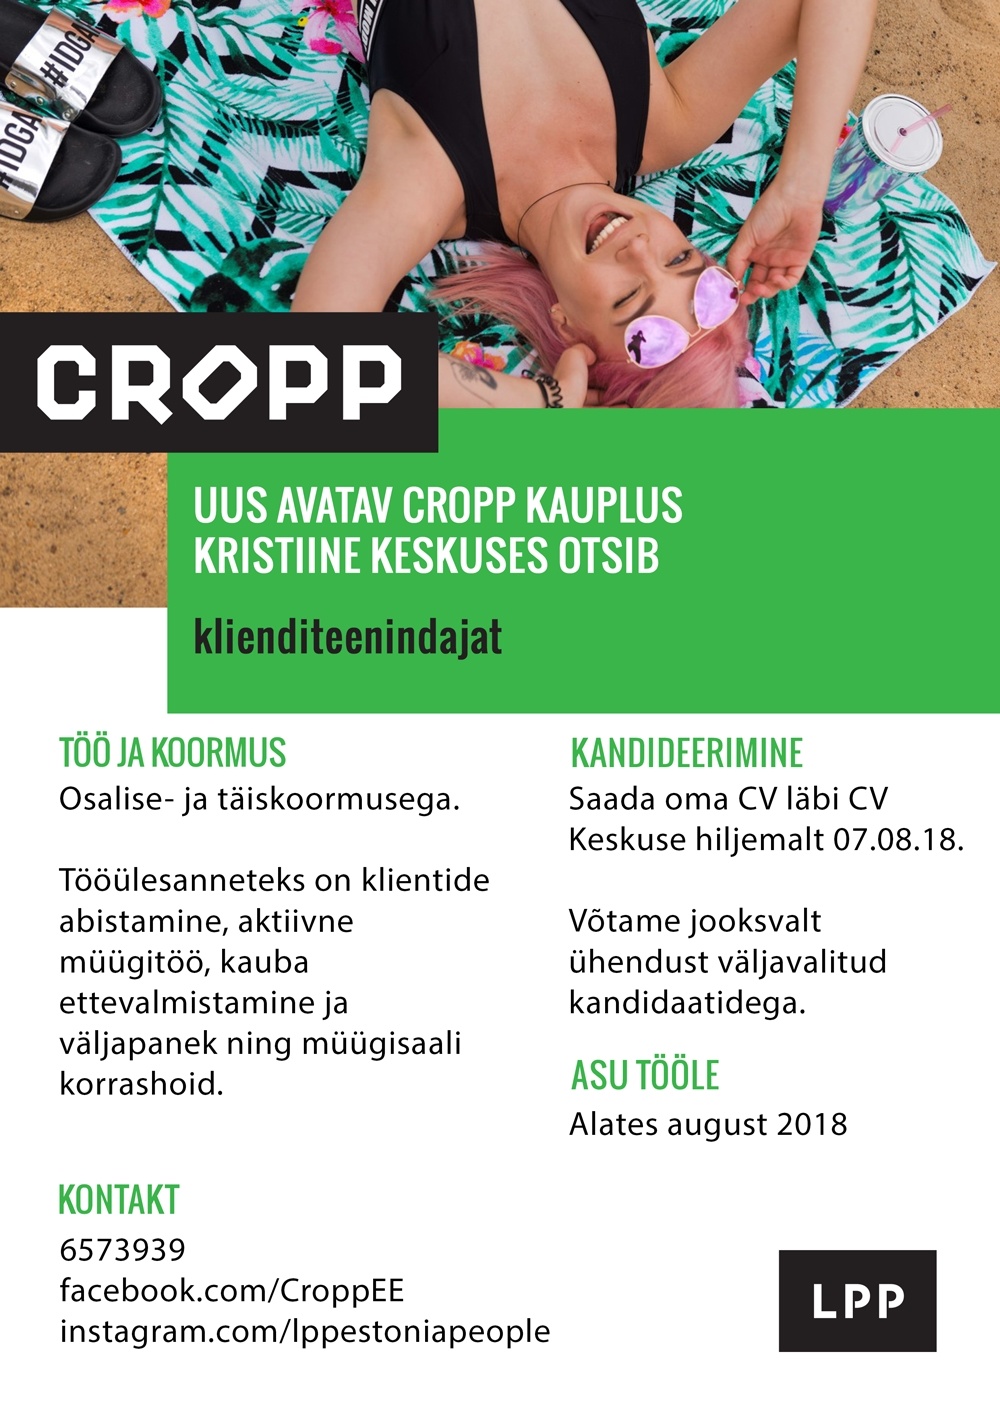 LPP Estonia OÜ Klienditeenindaja (täis- ja osaline koormus) avatavasse CROPP kauplusesse Kristiine keskuses